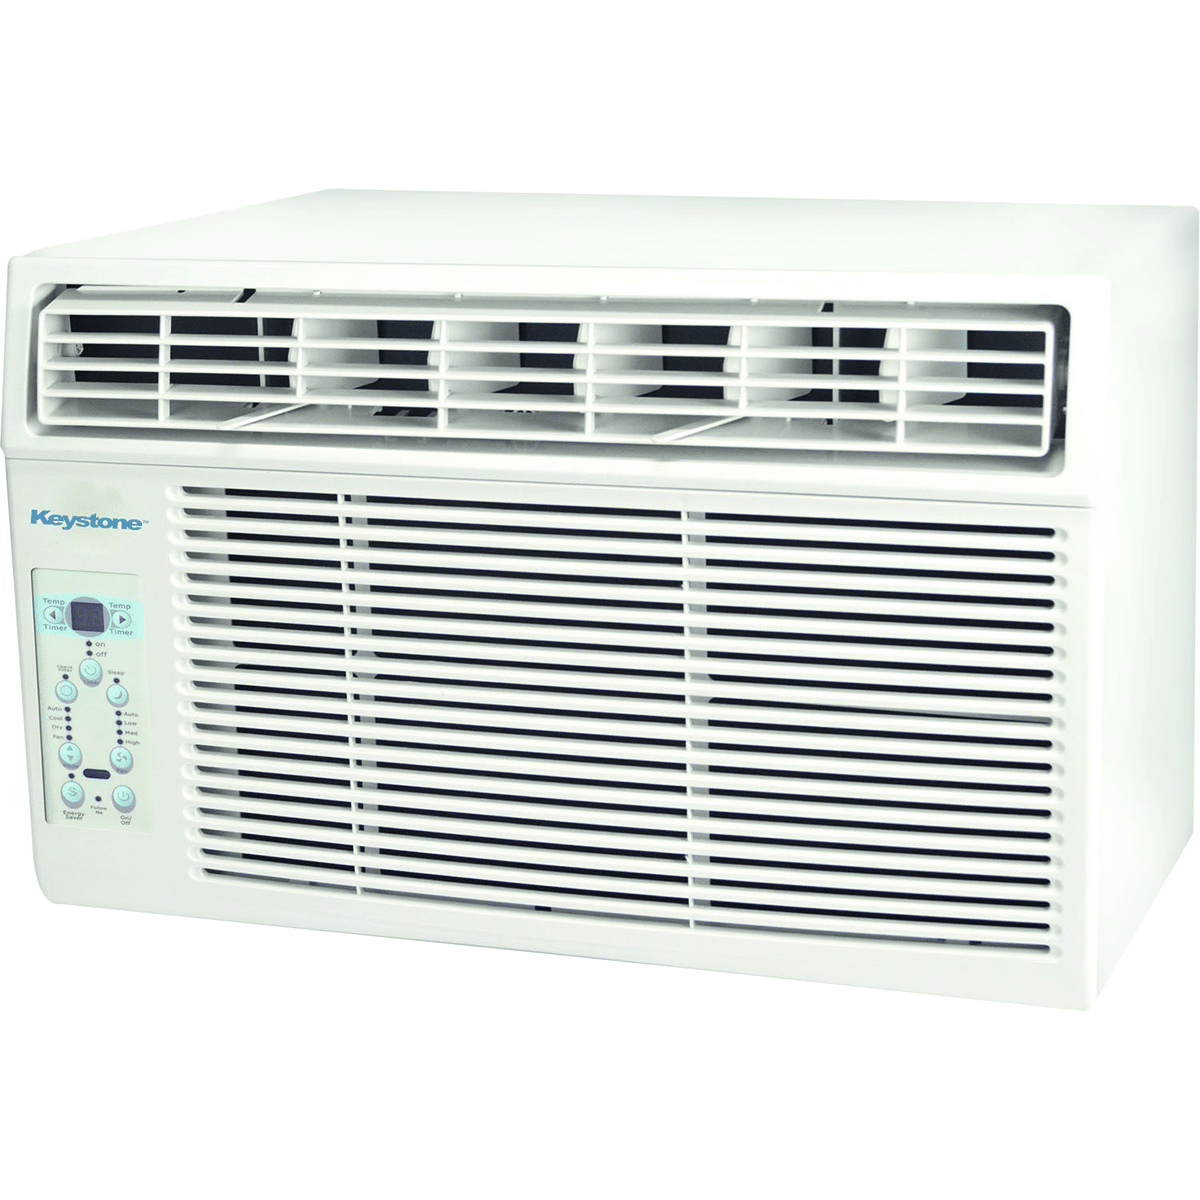 Keystone 12,000 Btu Window Air Conditioner